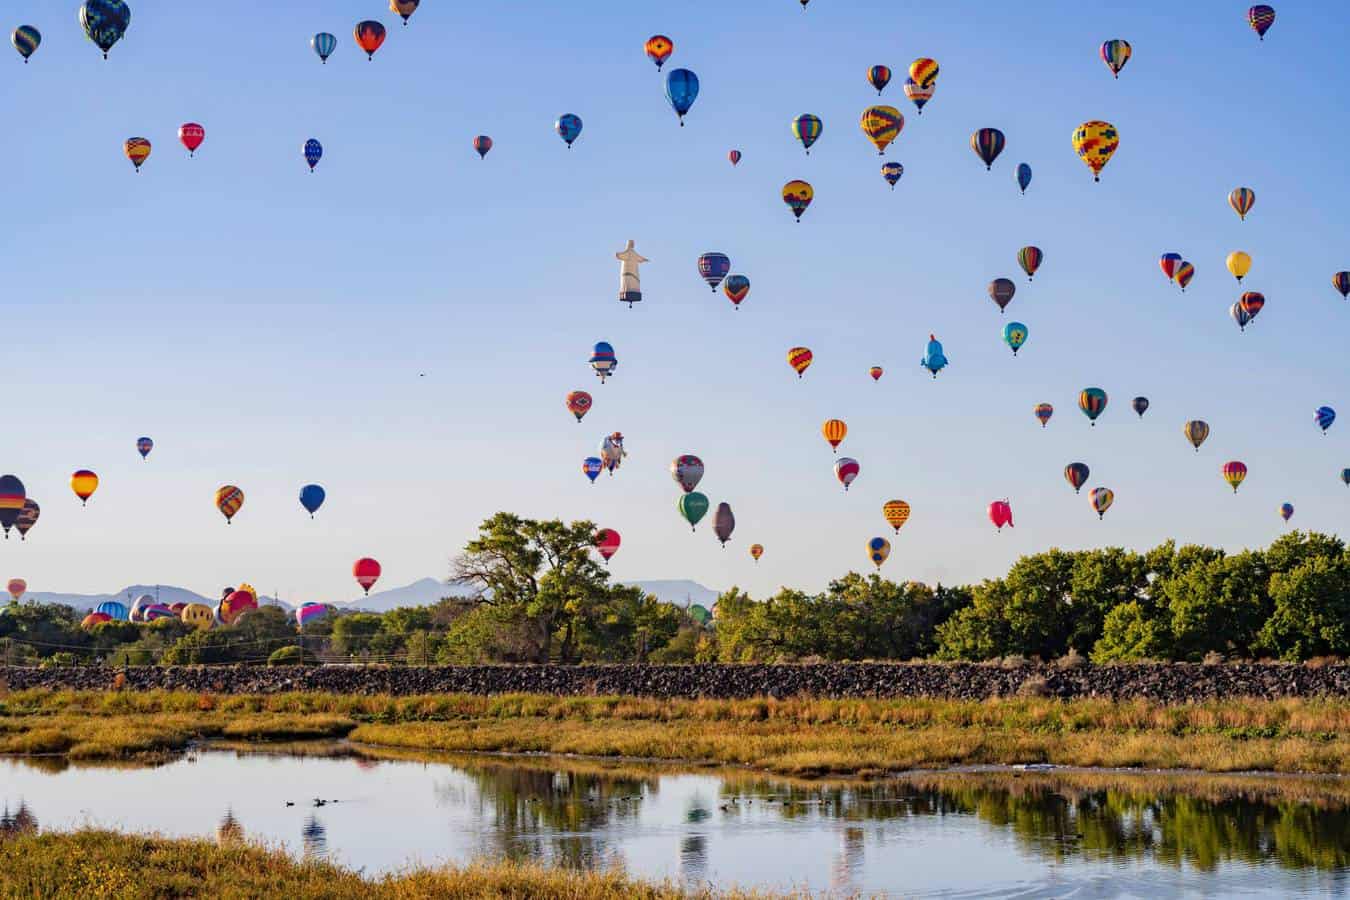 RV LIFE Set As Major Sponsor Of 2021 Albuquerque Balloon Fiesta